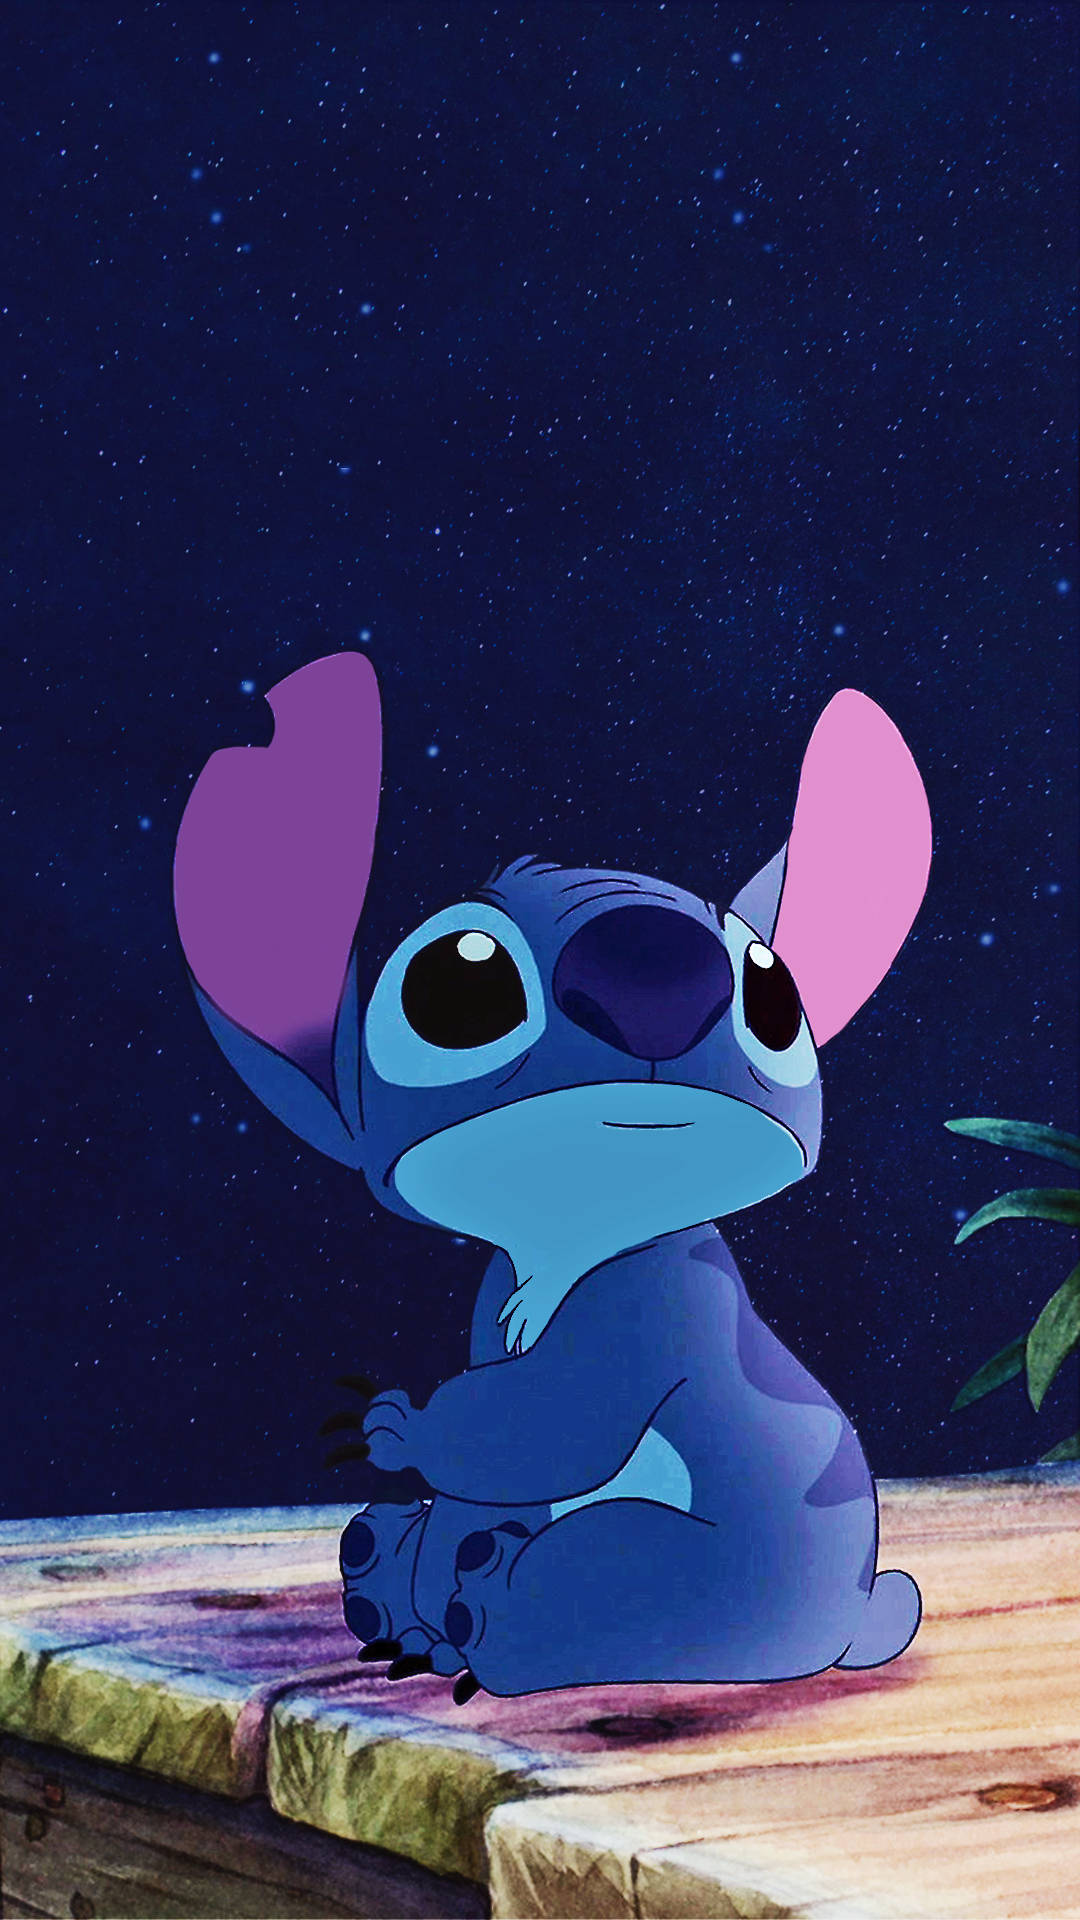 Cute Stitch At Night Iphone Background